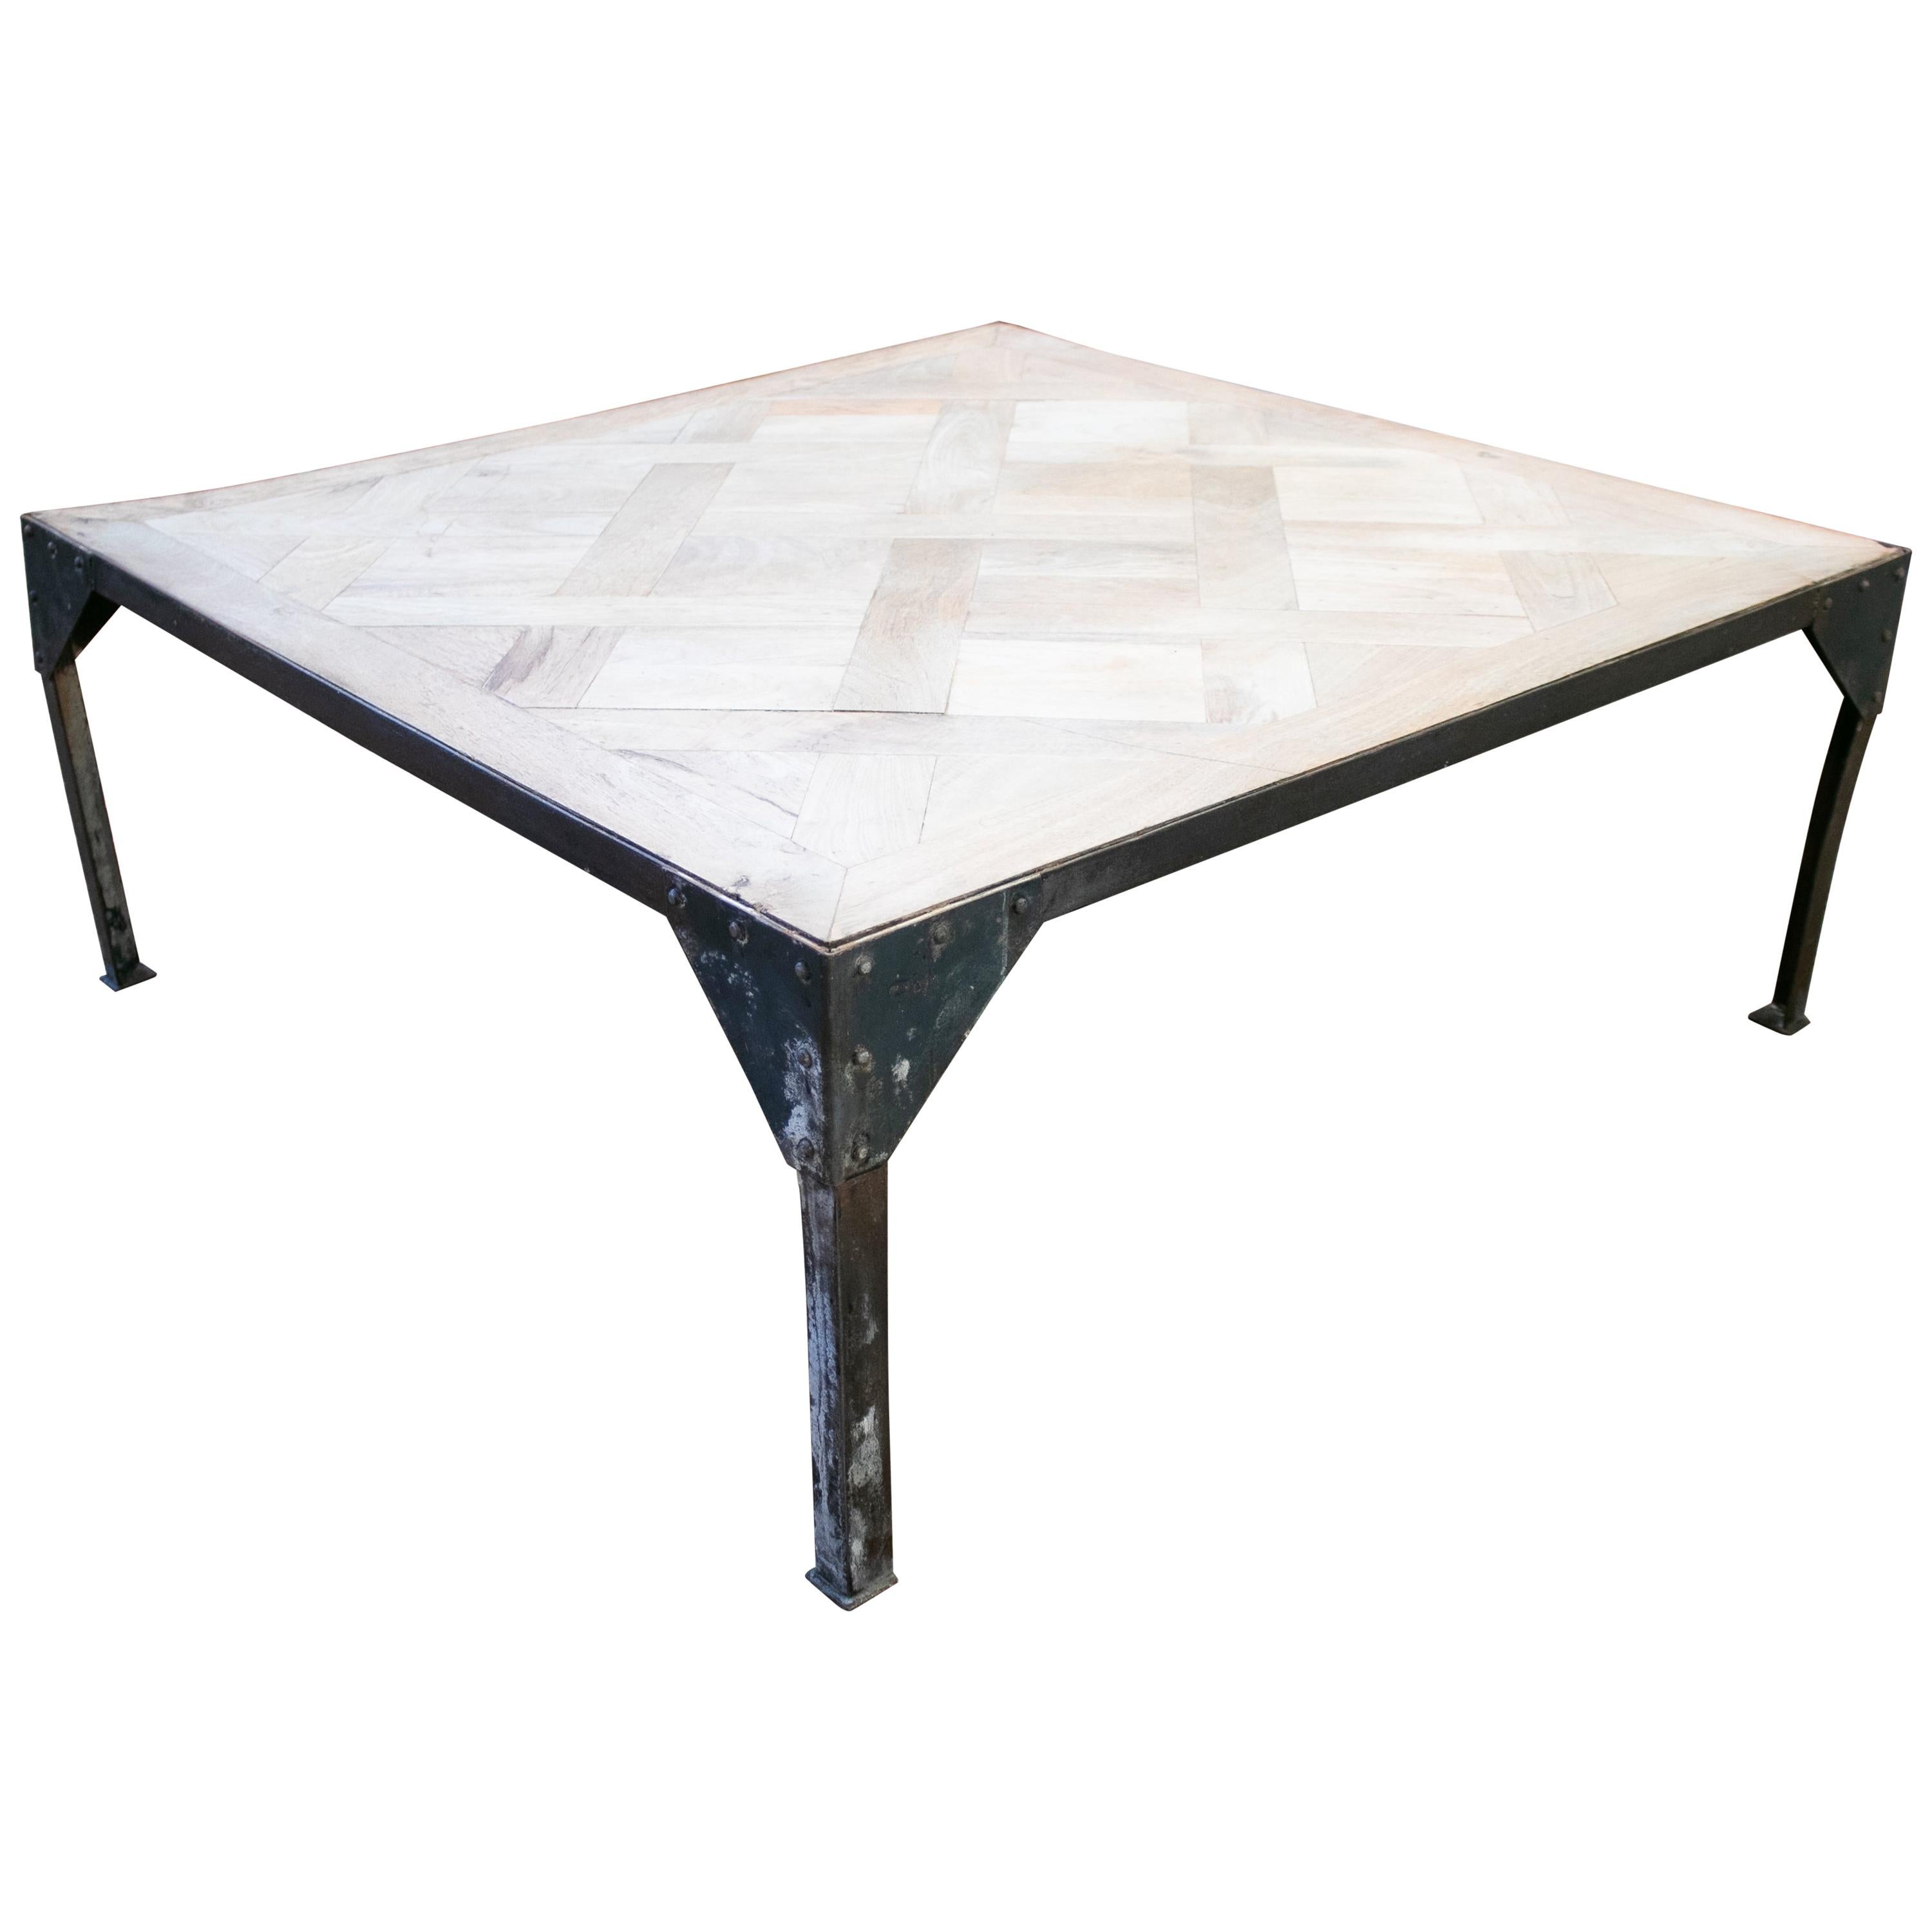 table basse de style industriel en bois français des années 1980 sur base rectangulaire en fer